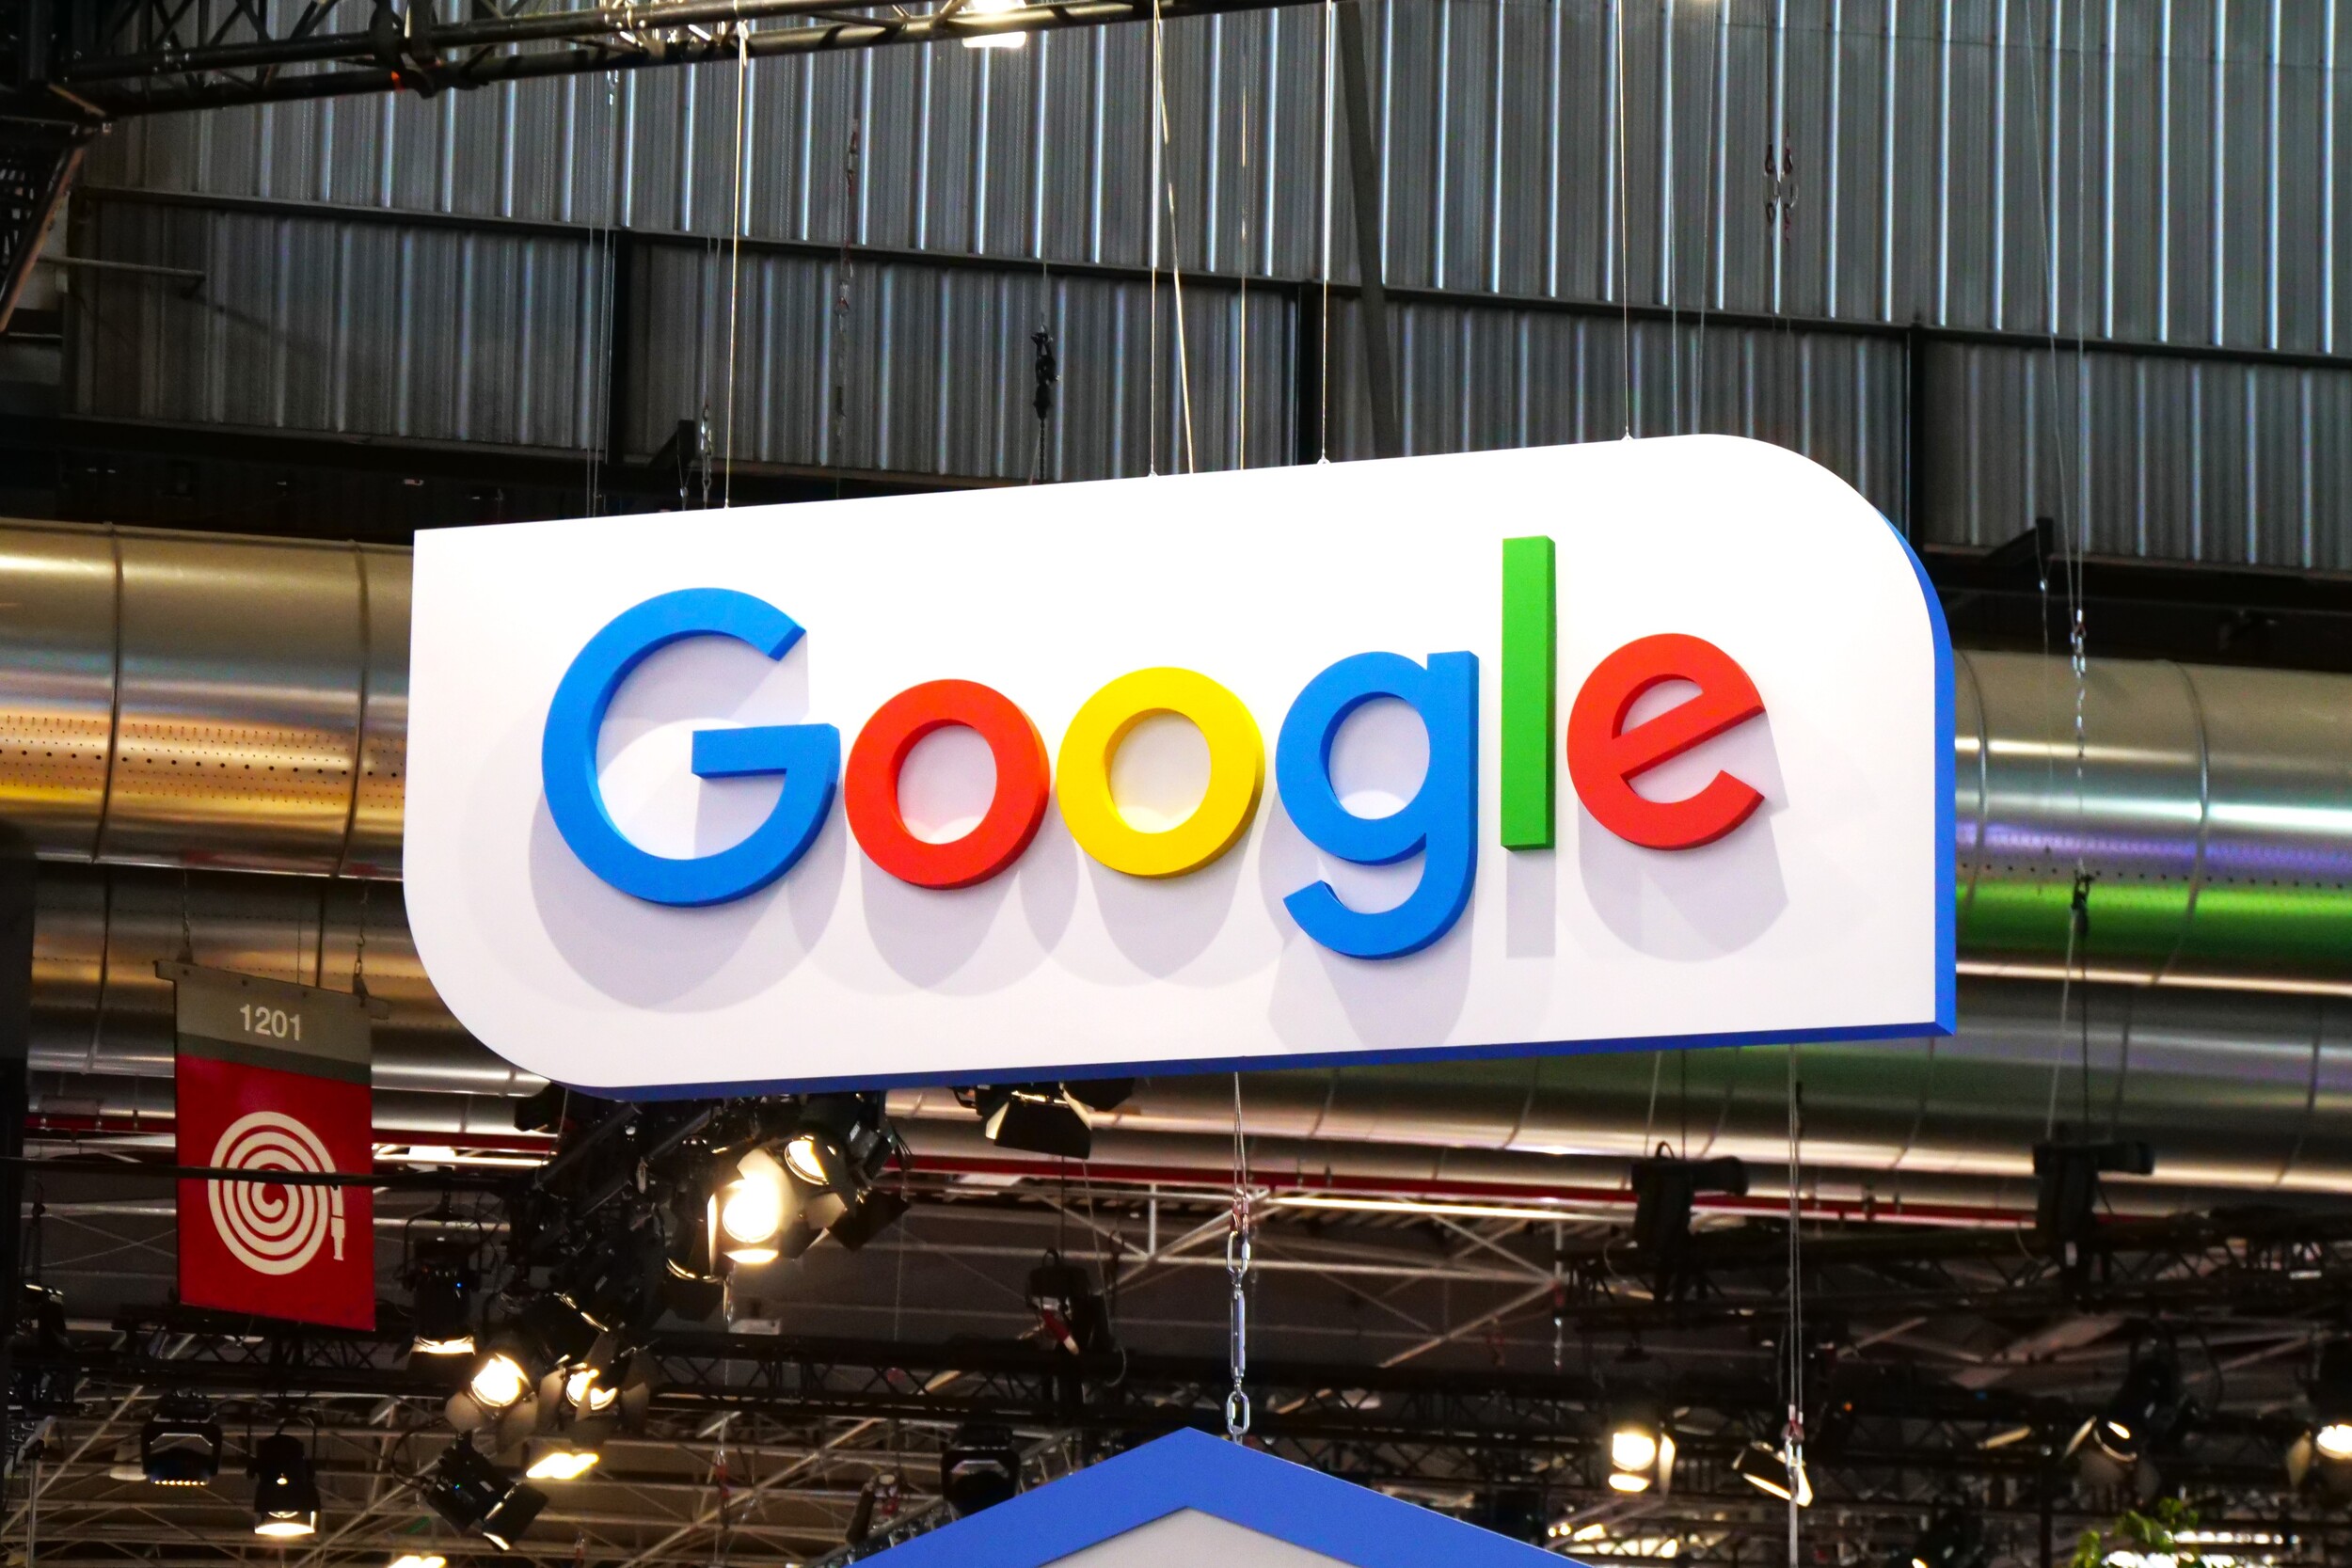 Droits voisins en France : Google sanctionnée d'une amende de 250 millions d'euros par l'Autorité de la concurrence